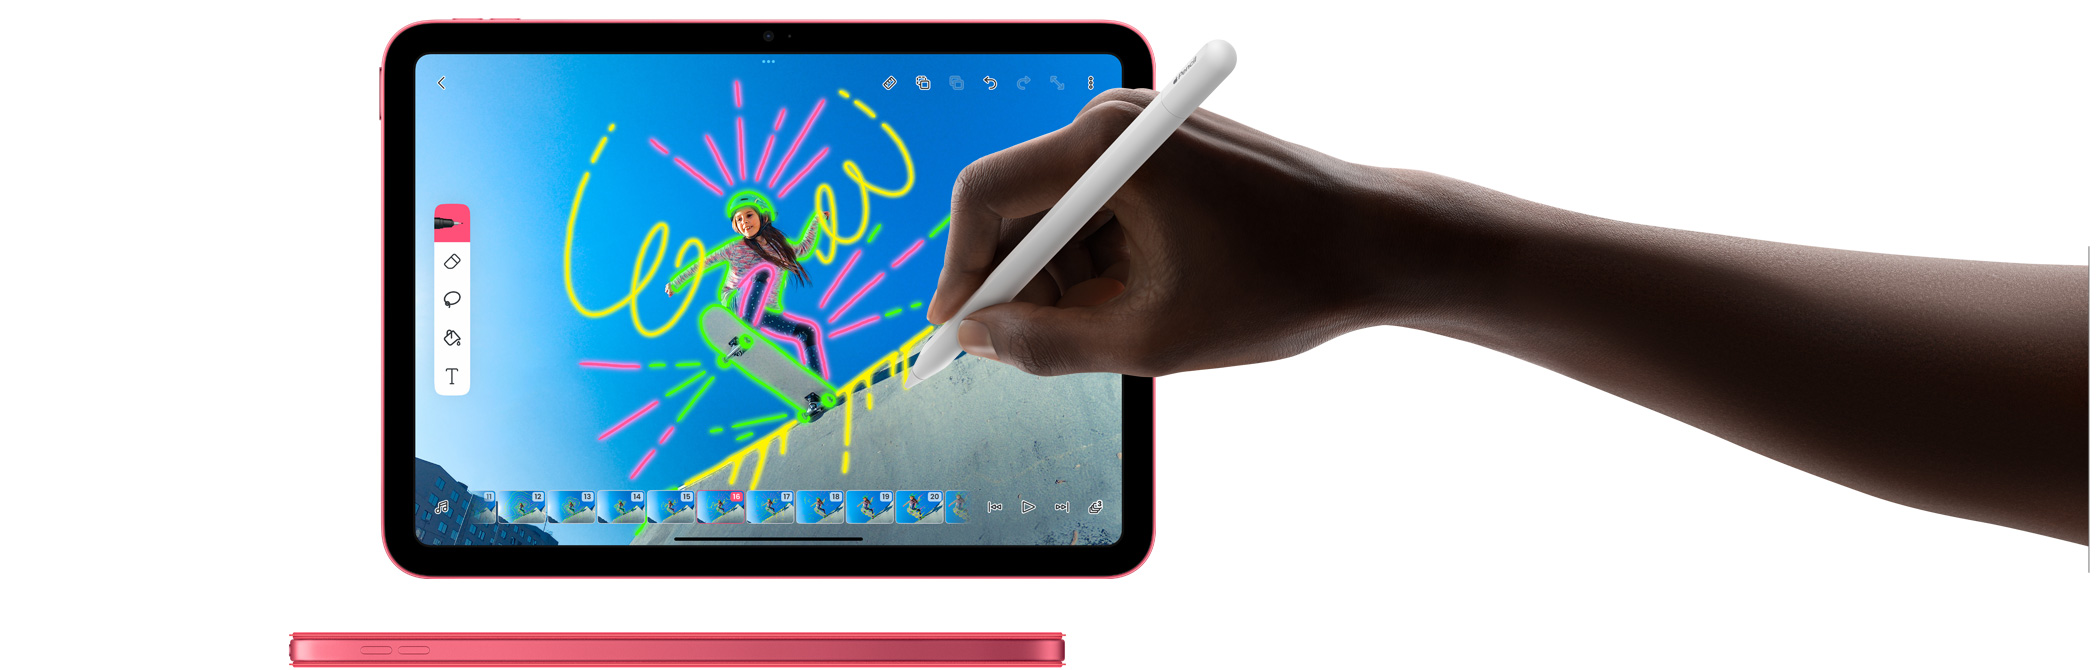 FlipaClip uygulamasında Apple Pencil kullanımı ve uyumlu renkte Smart Folio kılıf takılı pembe bir iPad’in yandan görünümü